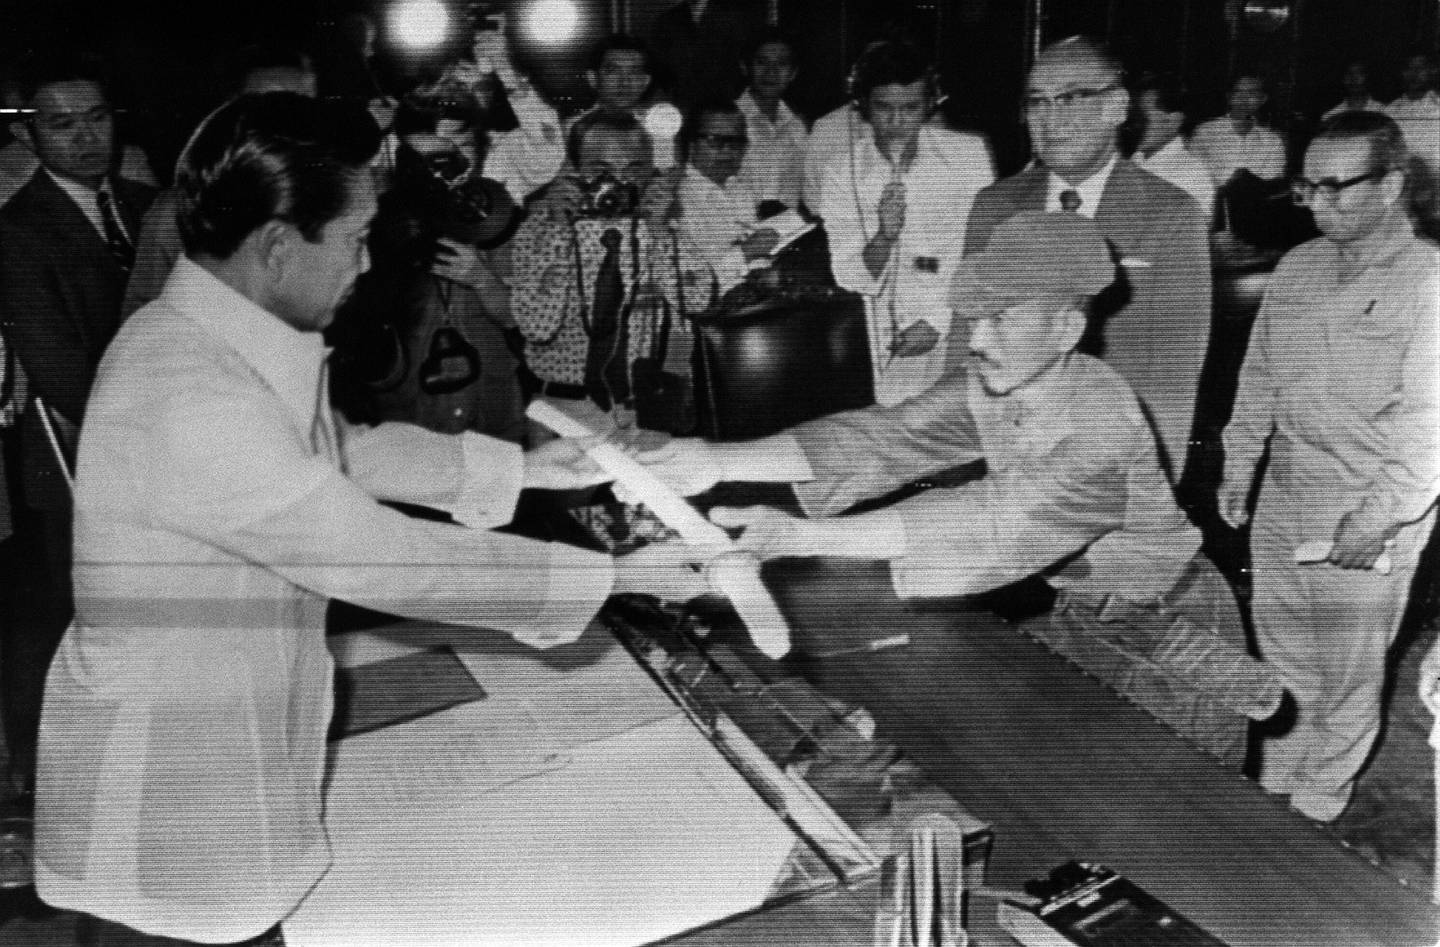 Hiroo Onoda presenterte sitt rustne samuraisverd for den daværende filippinske presidenten, Ferdinand Marcos. Marcos aksepterte kapitulasjonen. Datoen var 11. mars 1974.